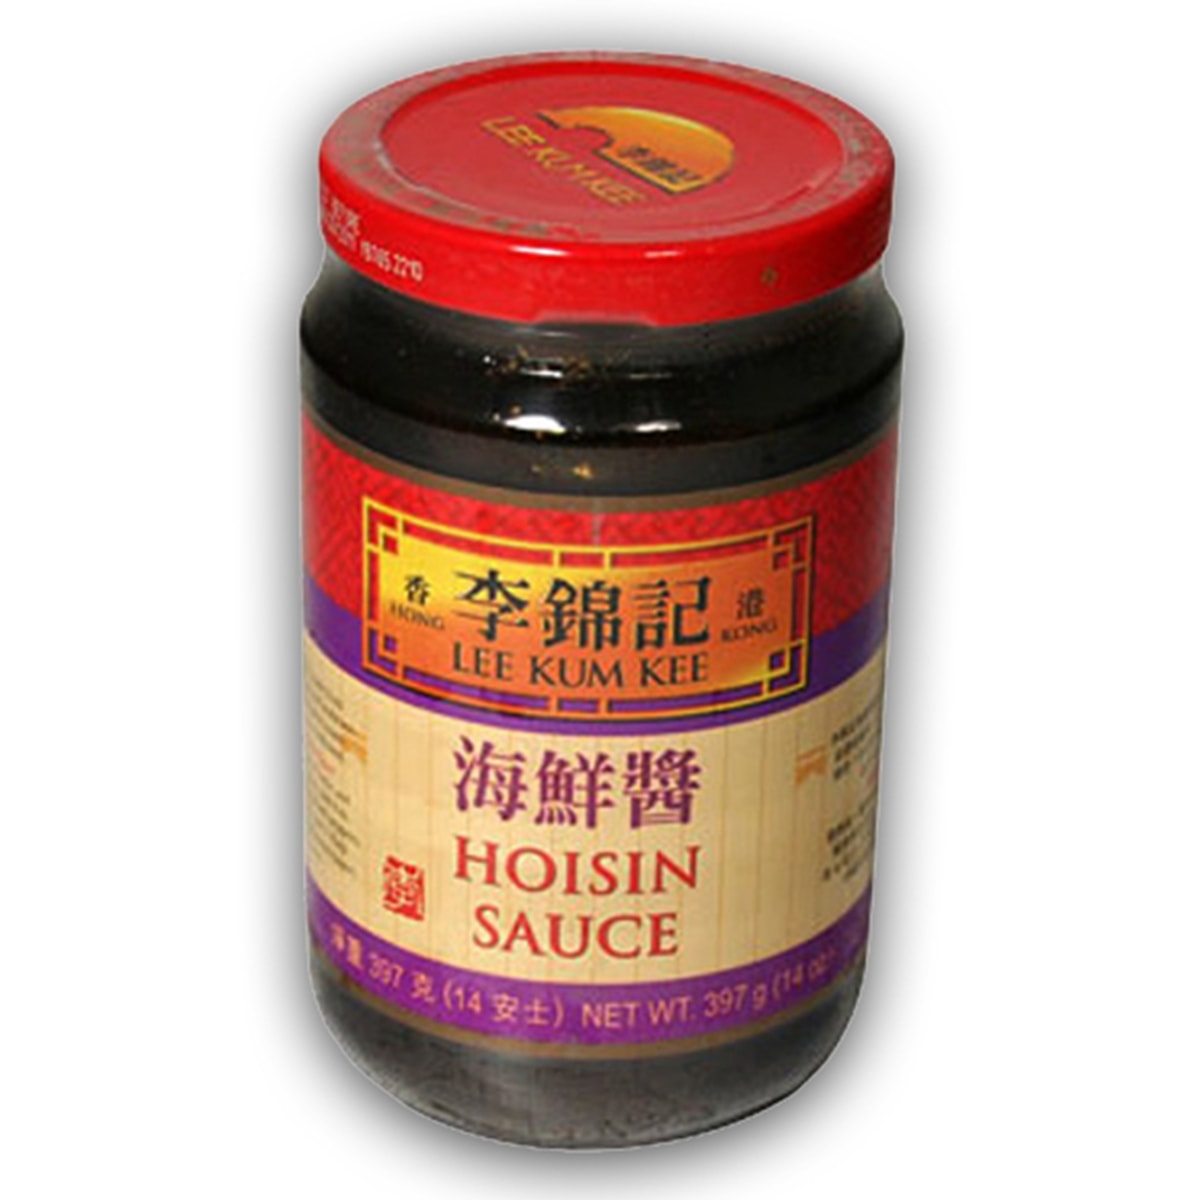 Buy Lee Kum Kee Hoisin Sauce - 397 gm